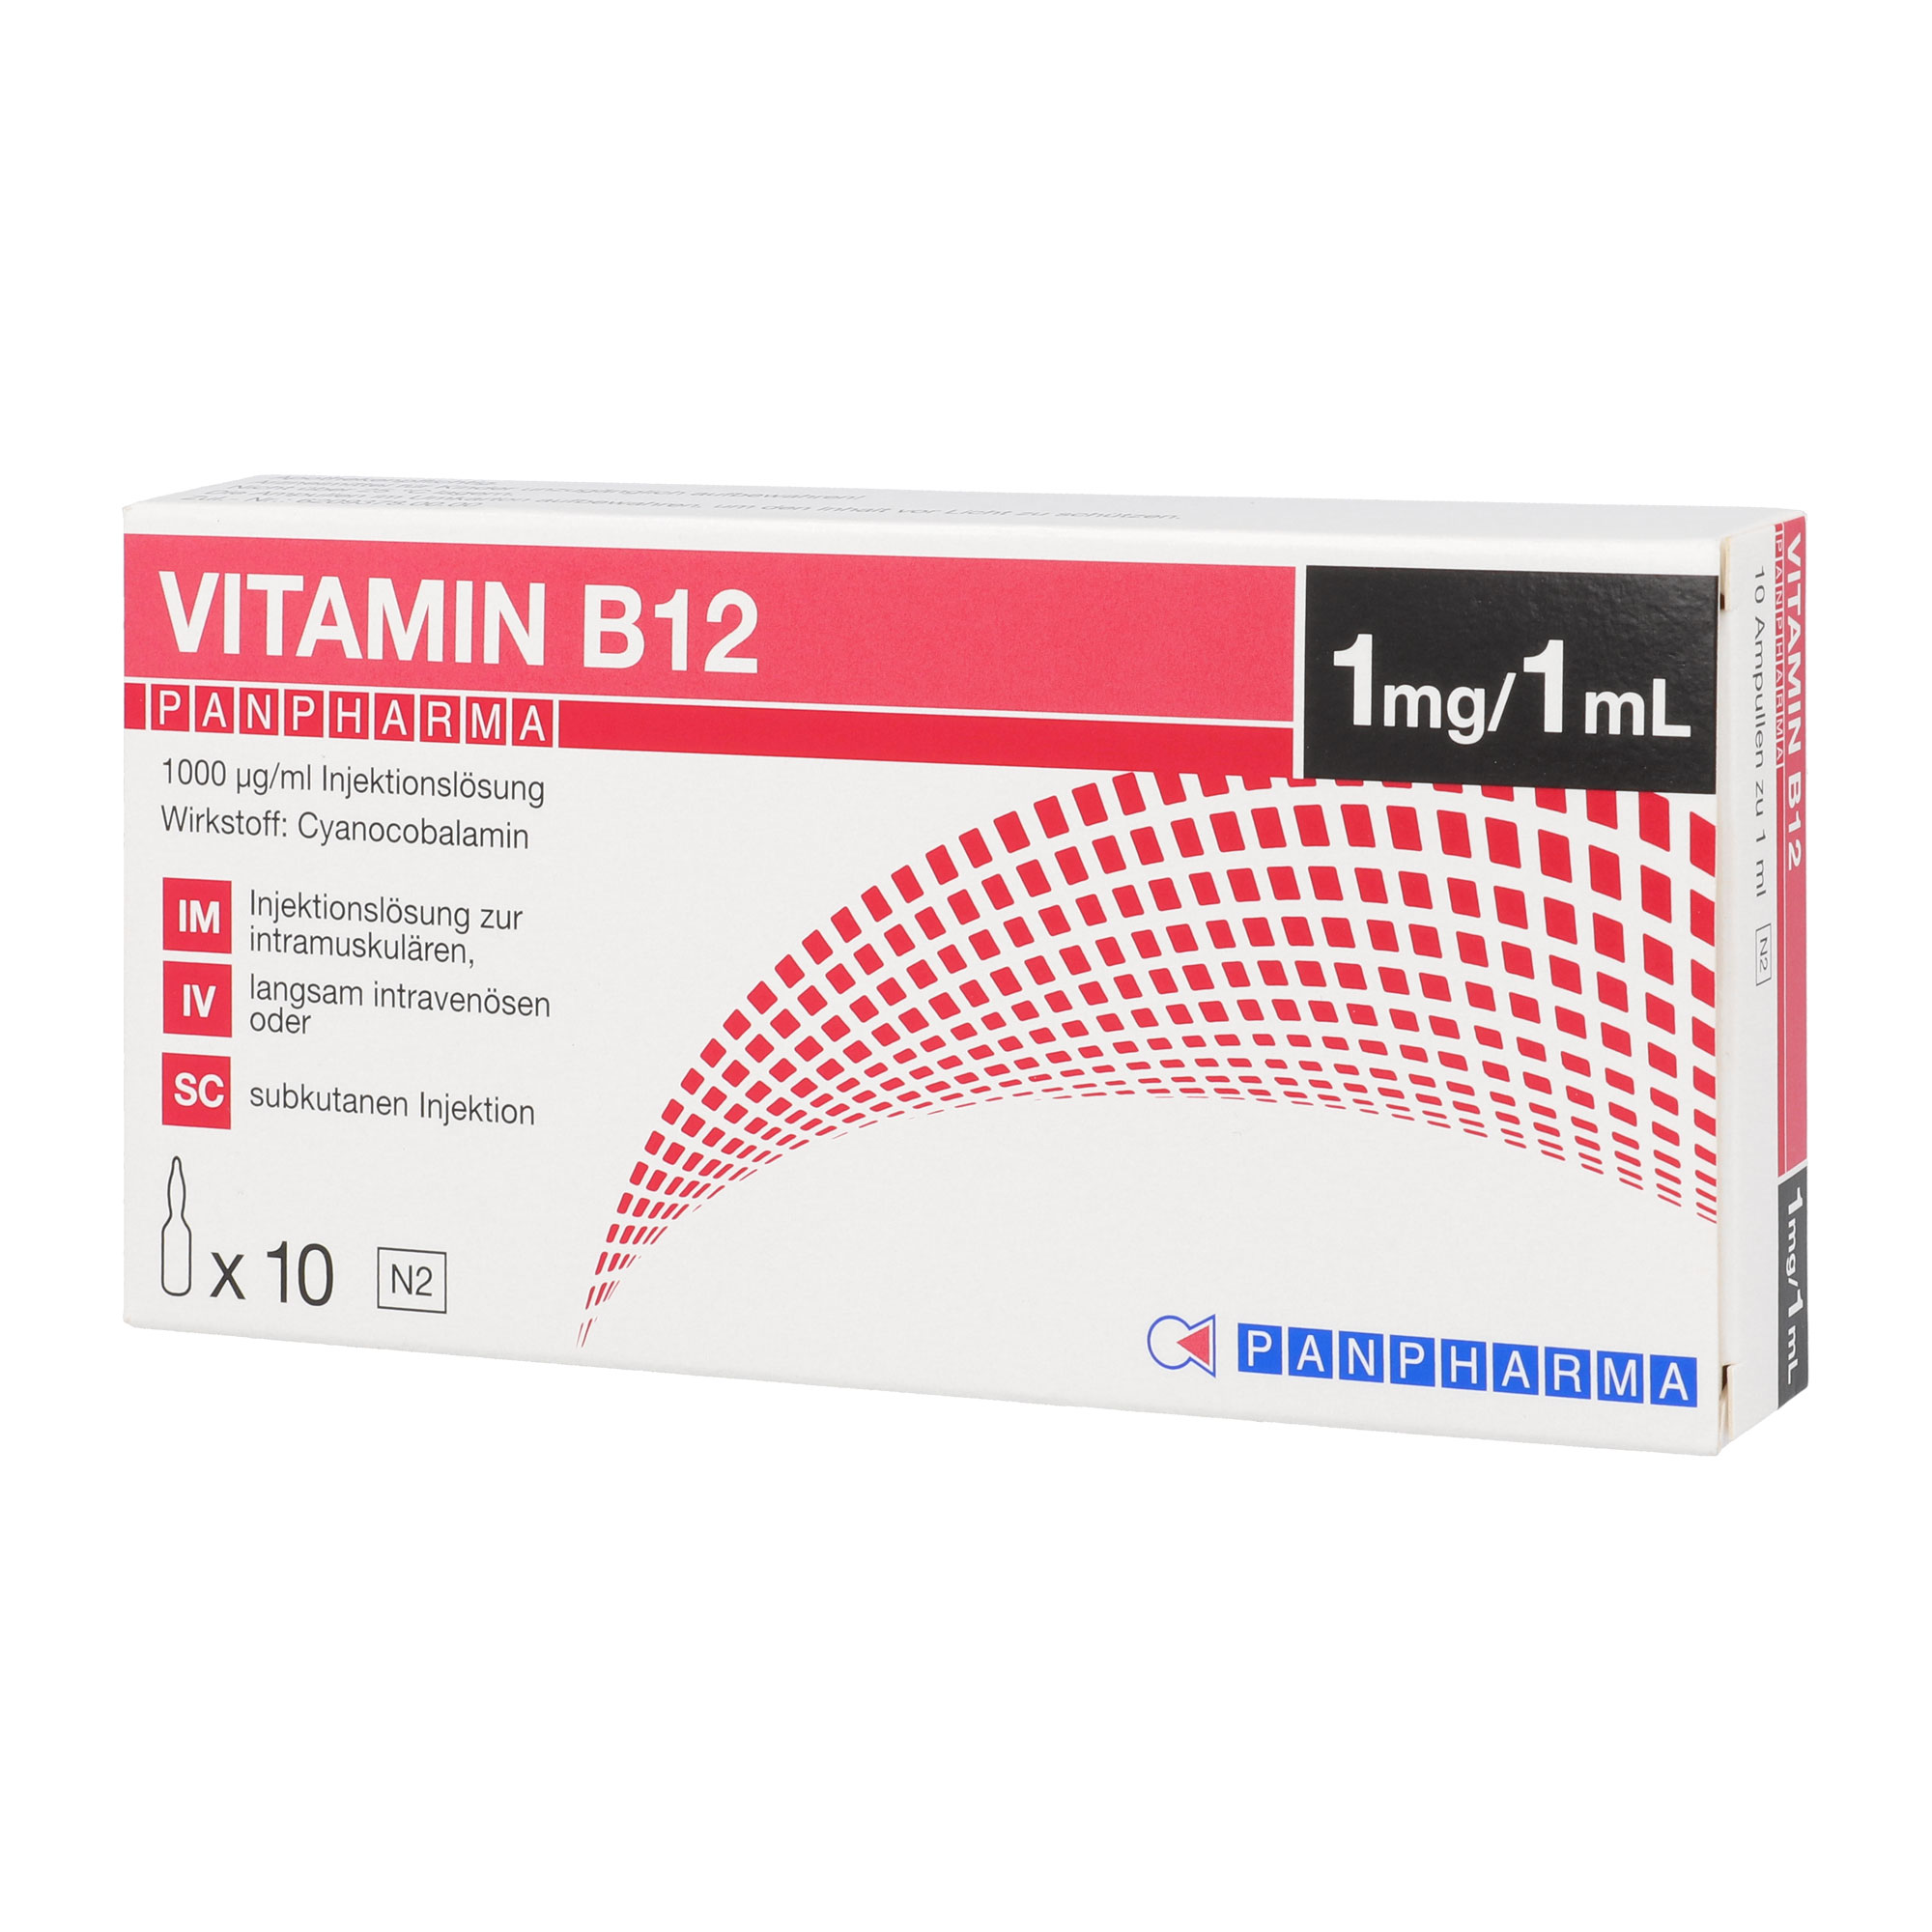 Vitamin B12 Panpharma wird angewendet bei Vitamin B12-Mangel, der ernährungsmäßig nicht behoben werden kann.